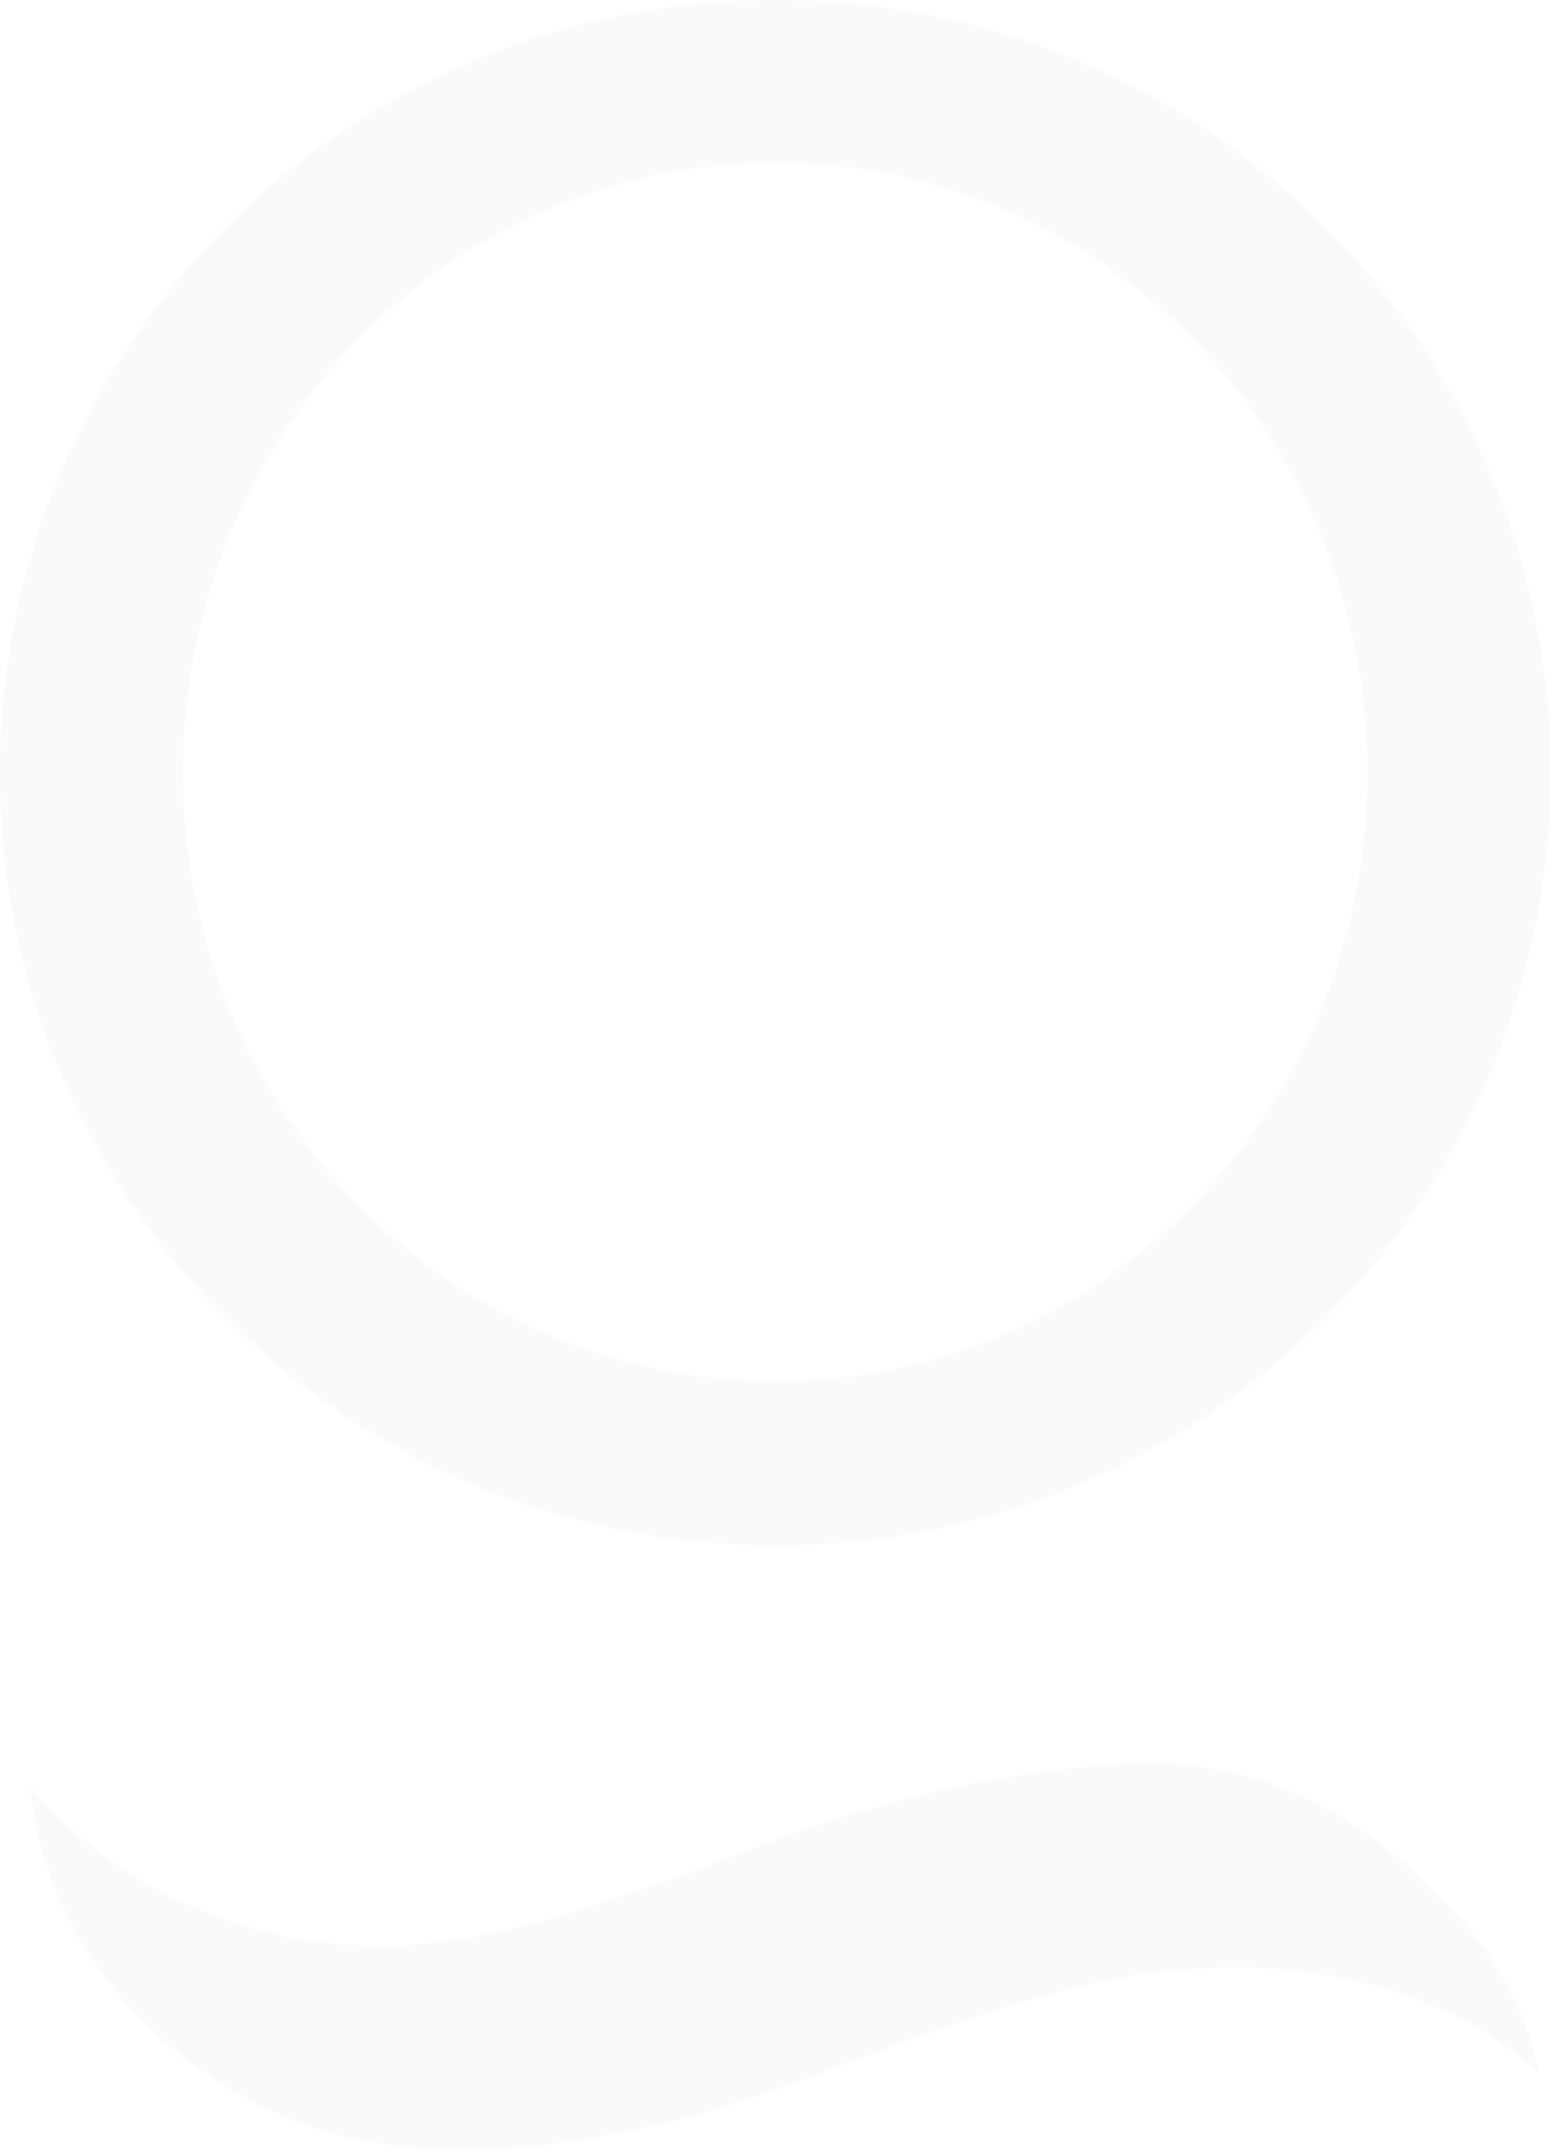 Organogenesis logo for dark backgrounds (transparent PNG)